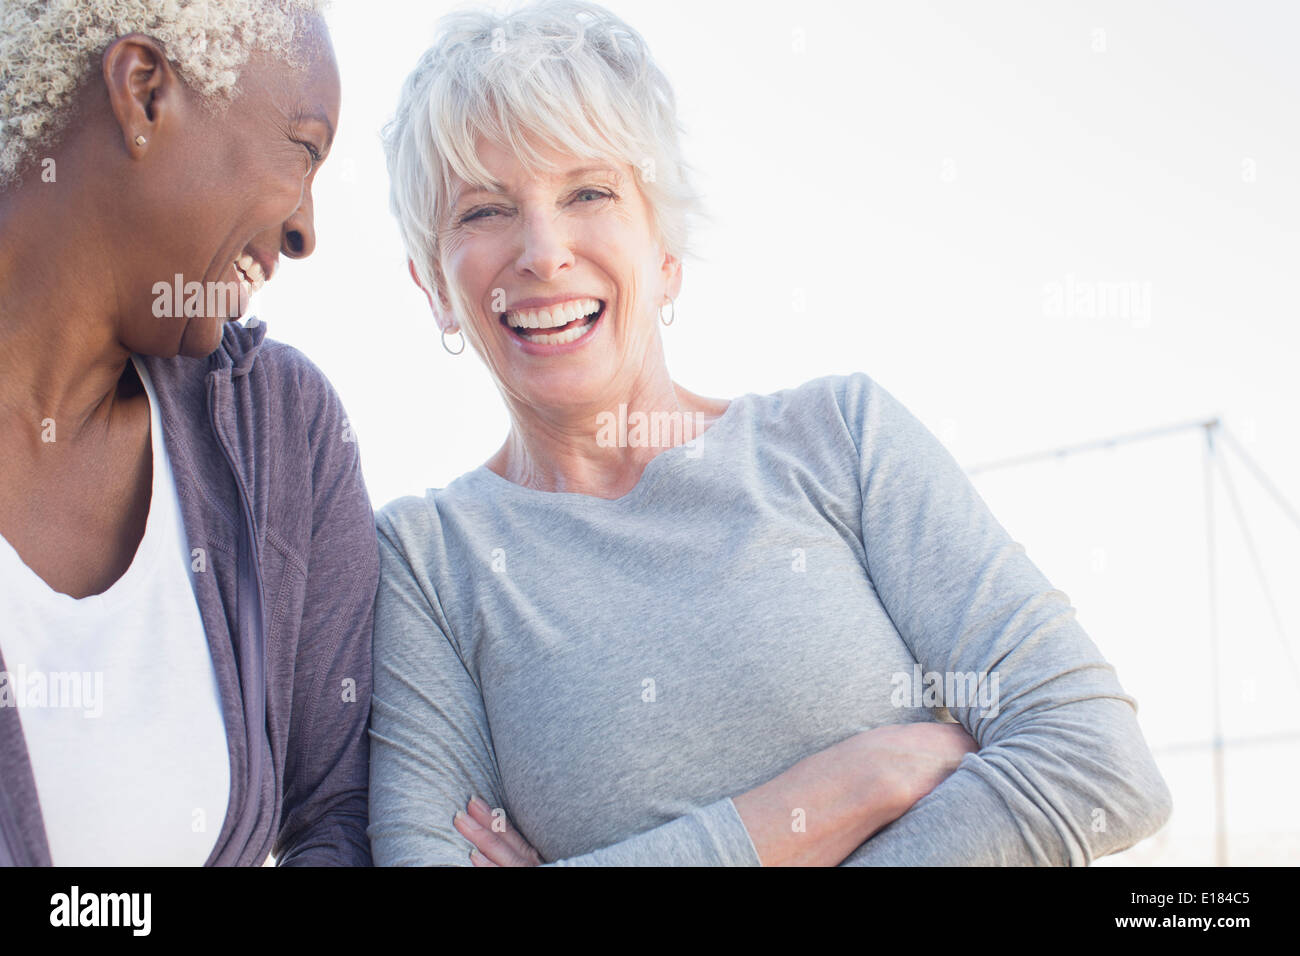 Les femmes âgées laughing outdoors Banque D'Images